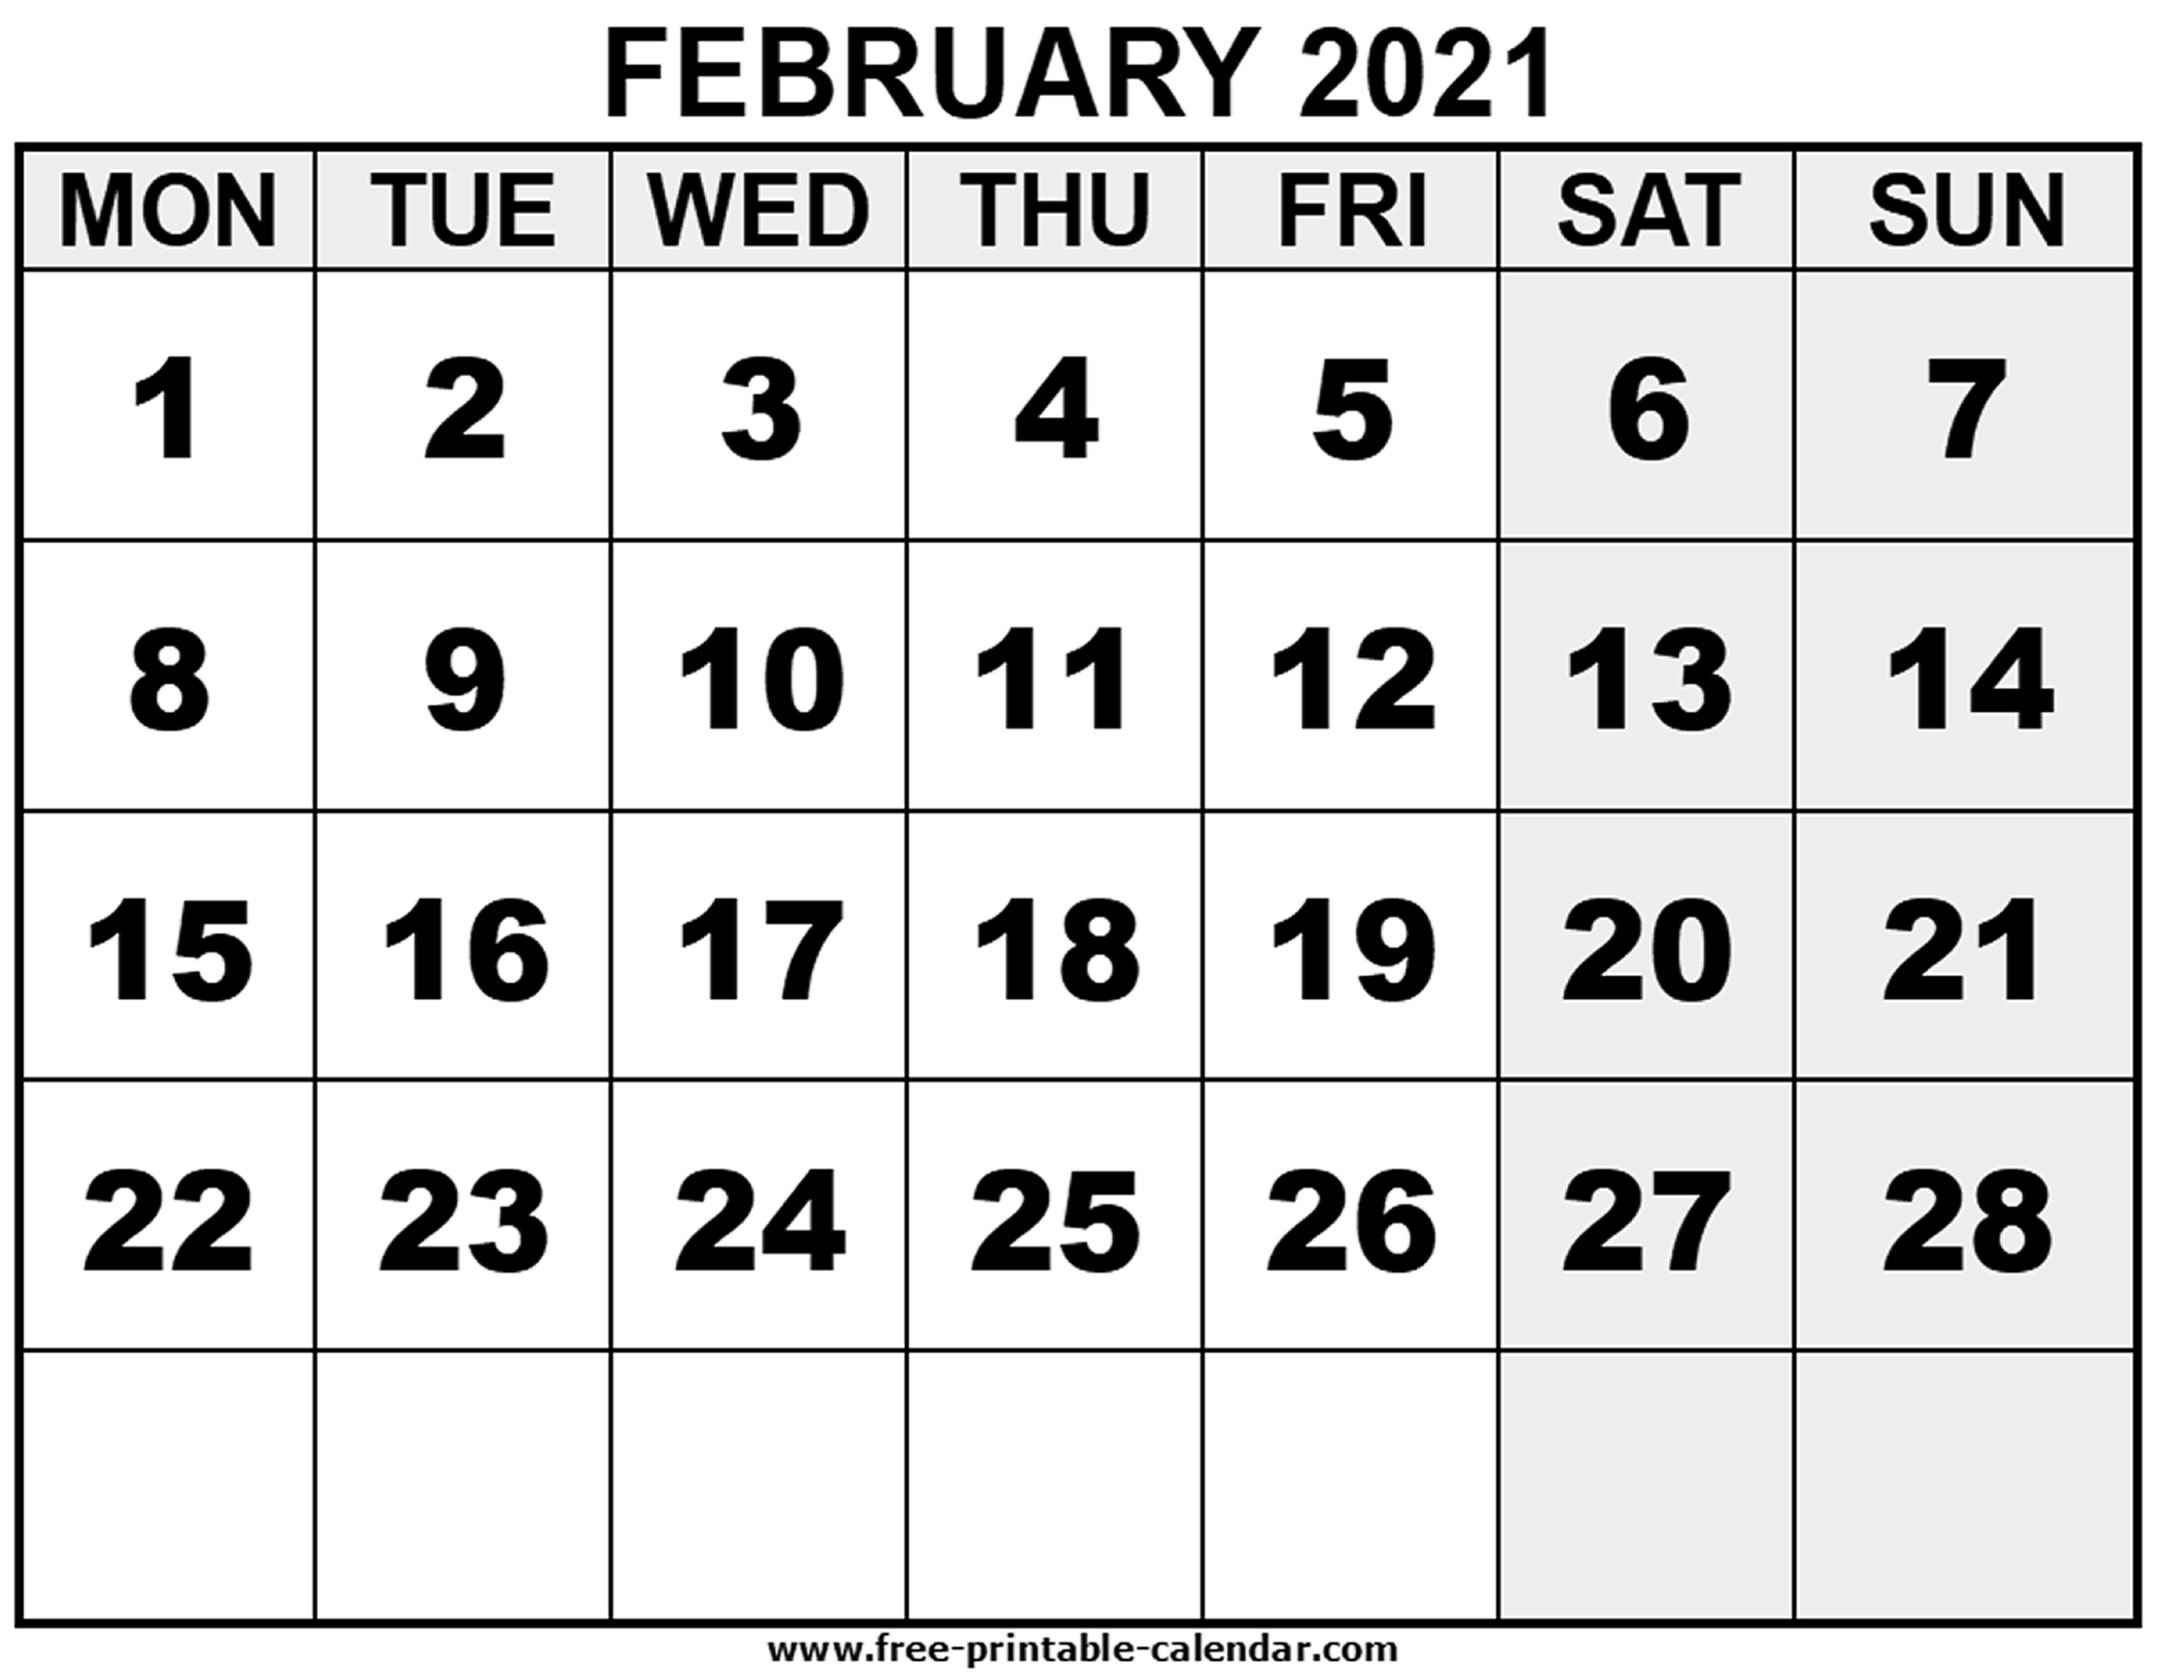 2021 February - Free-Printable-Calendar-February Calendar 2021